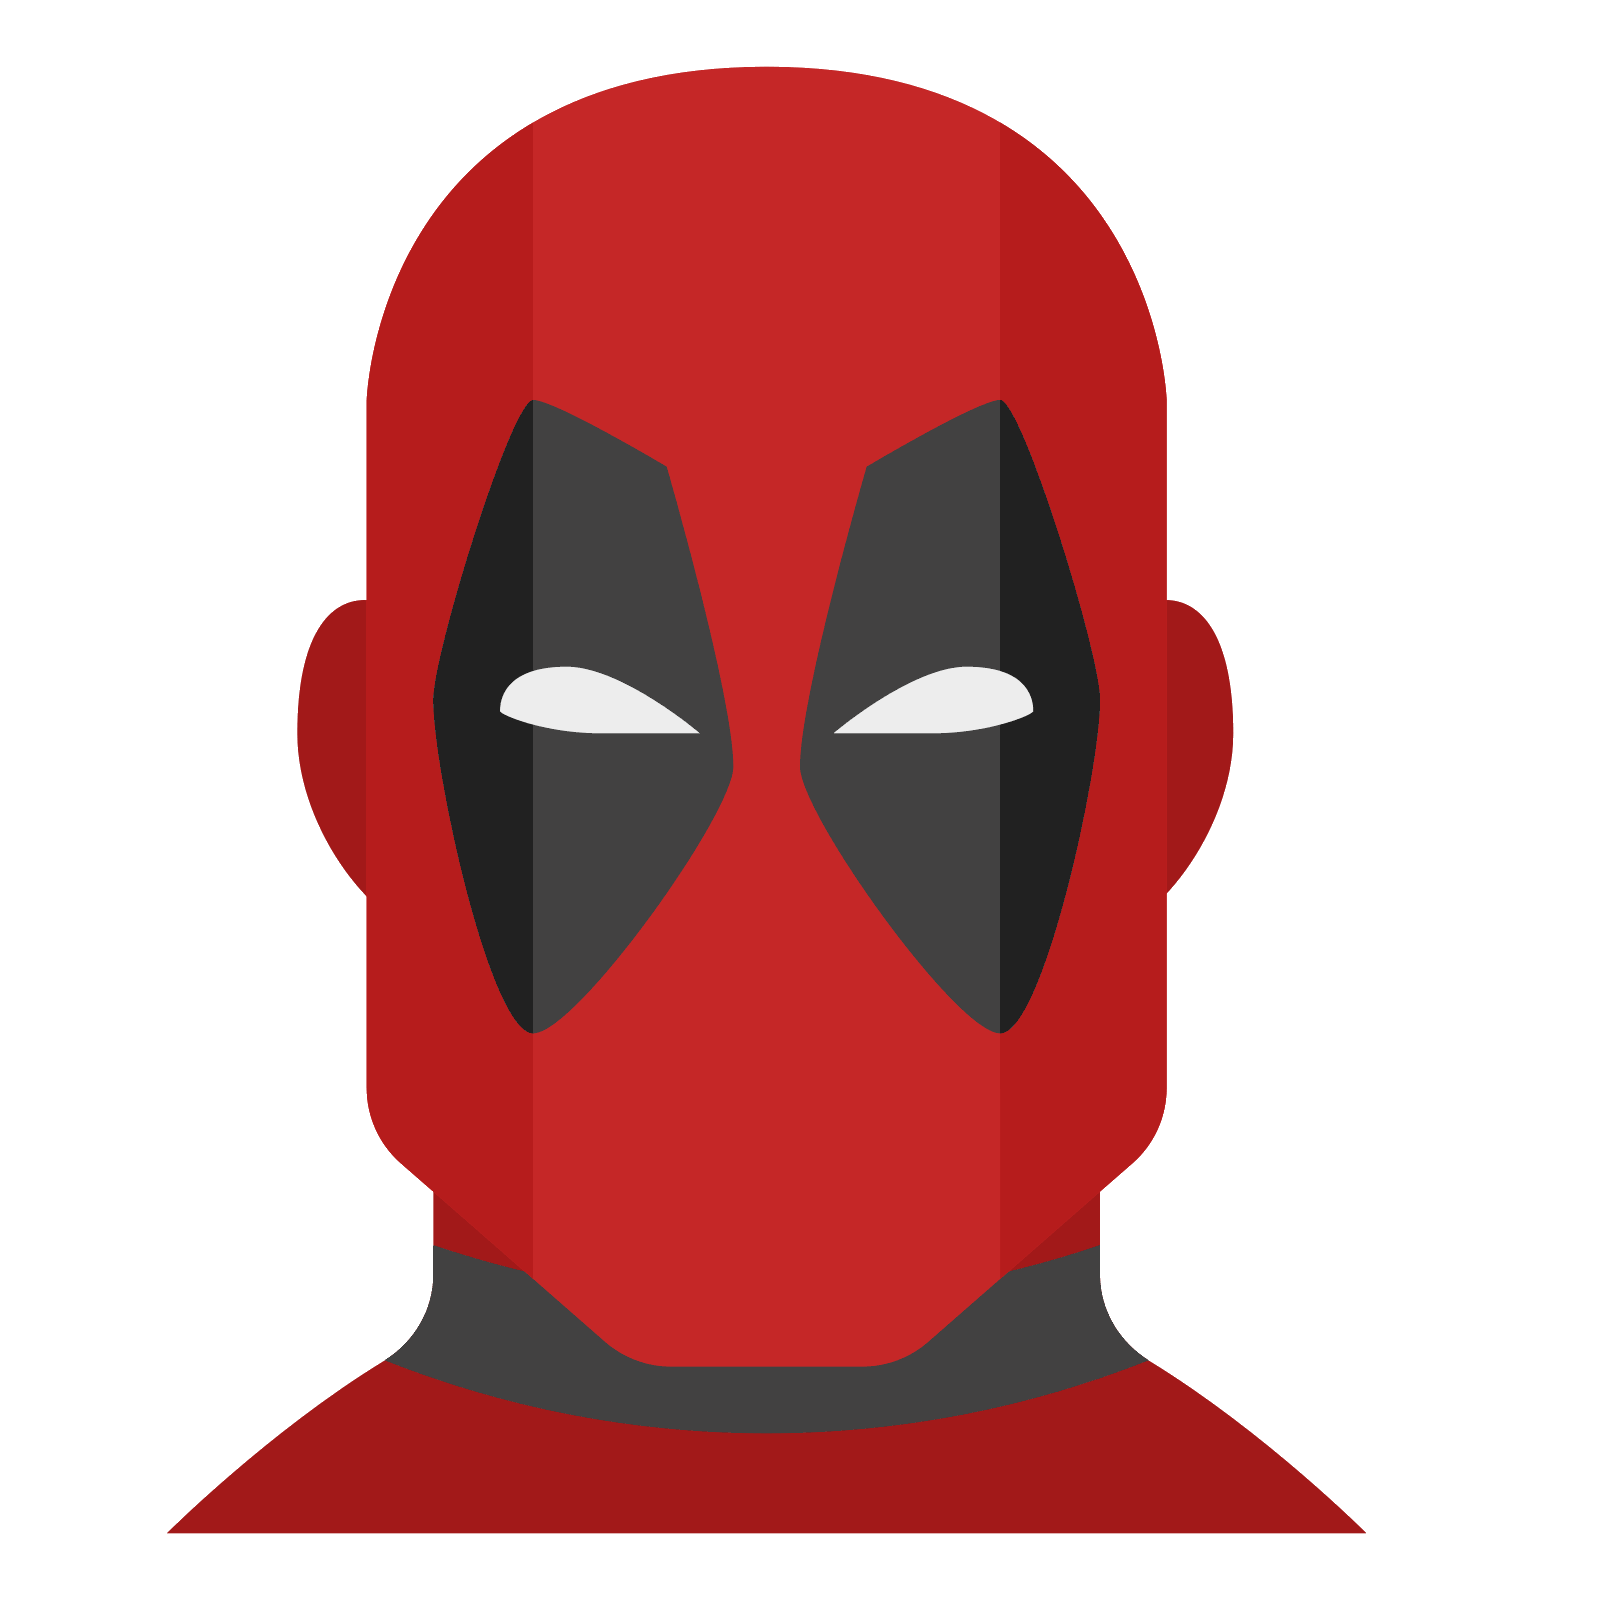 Deadpool Logo Download PNG Image